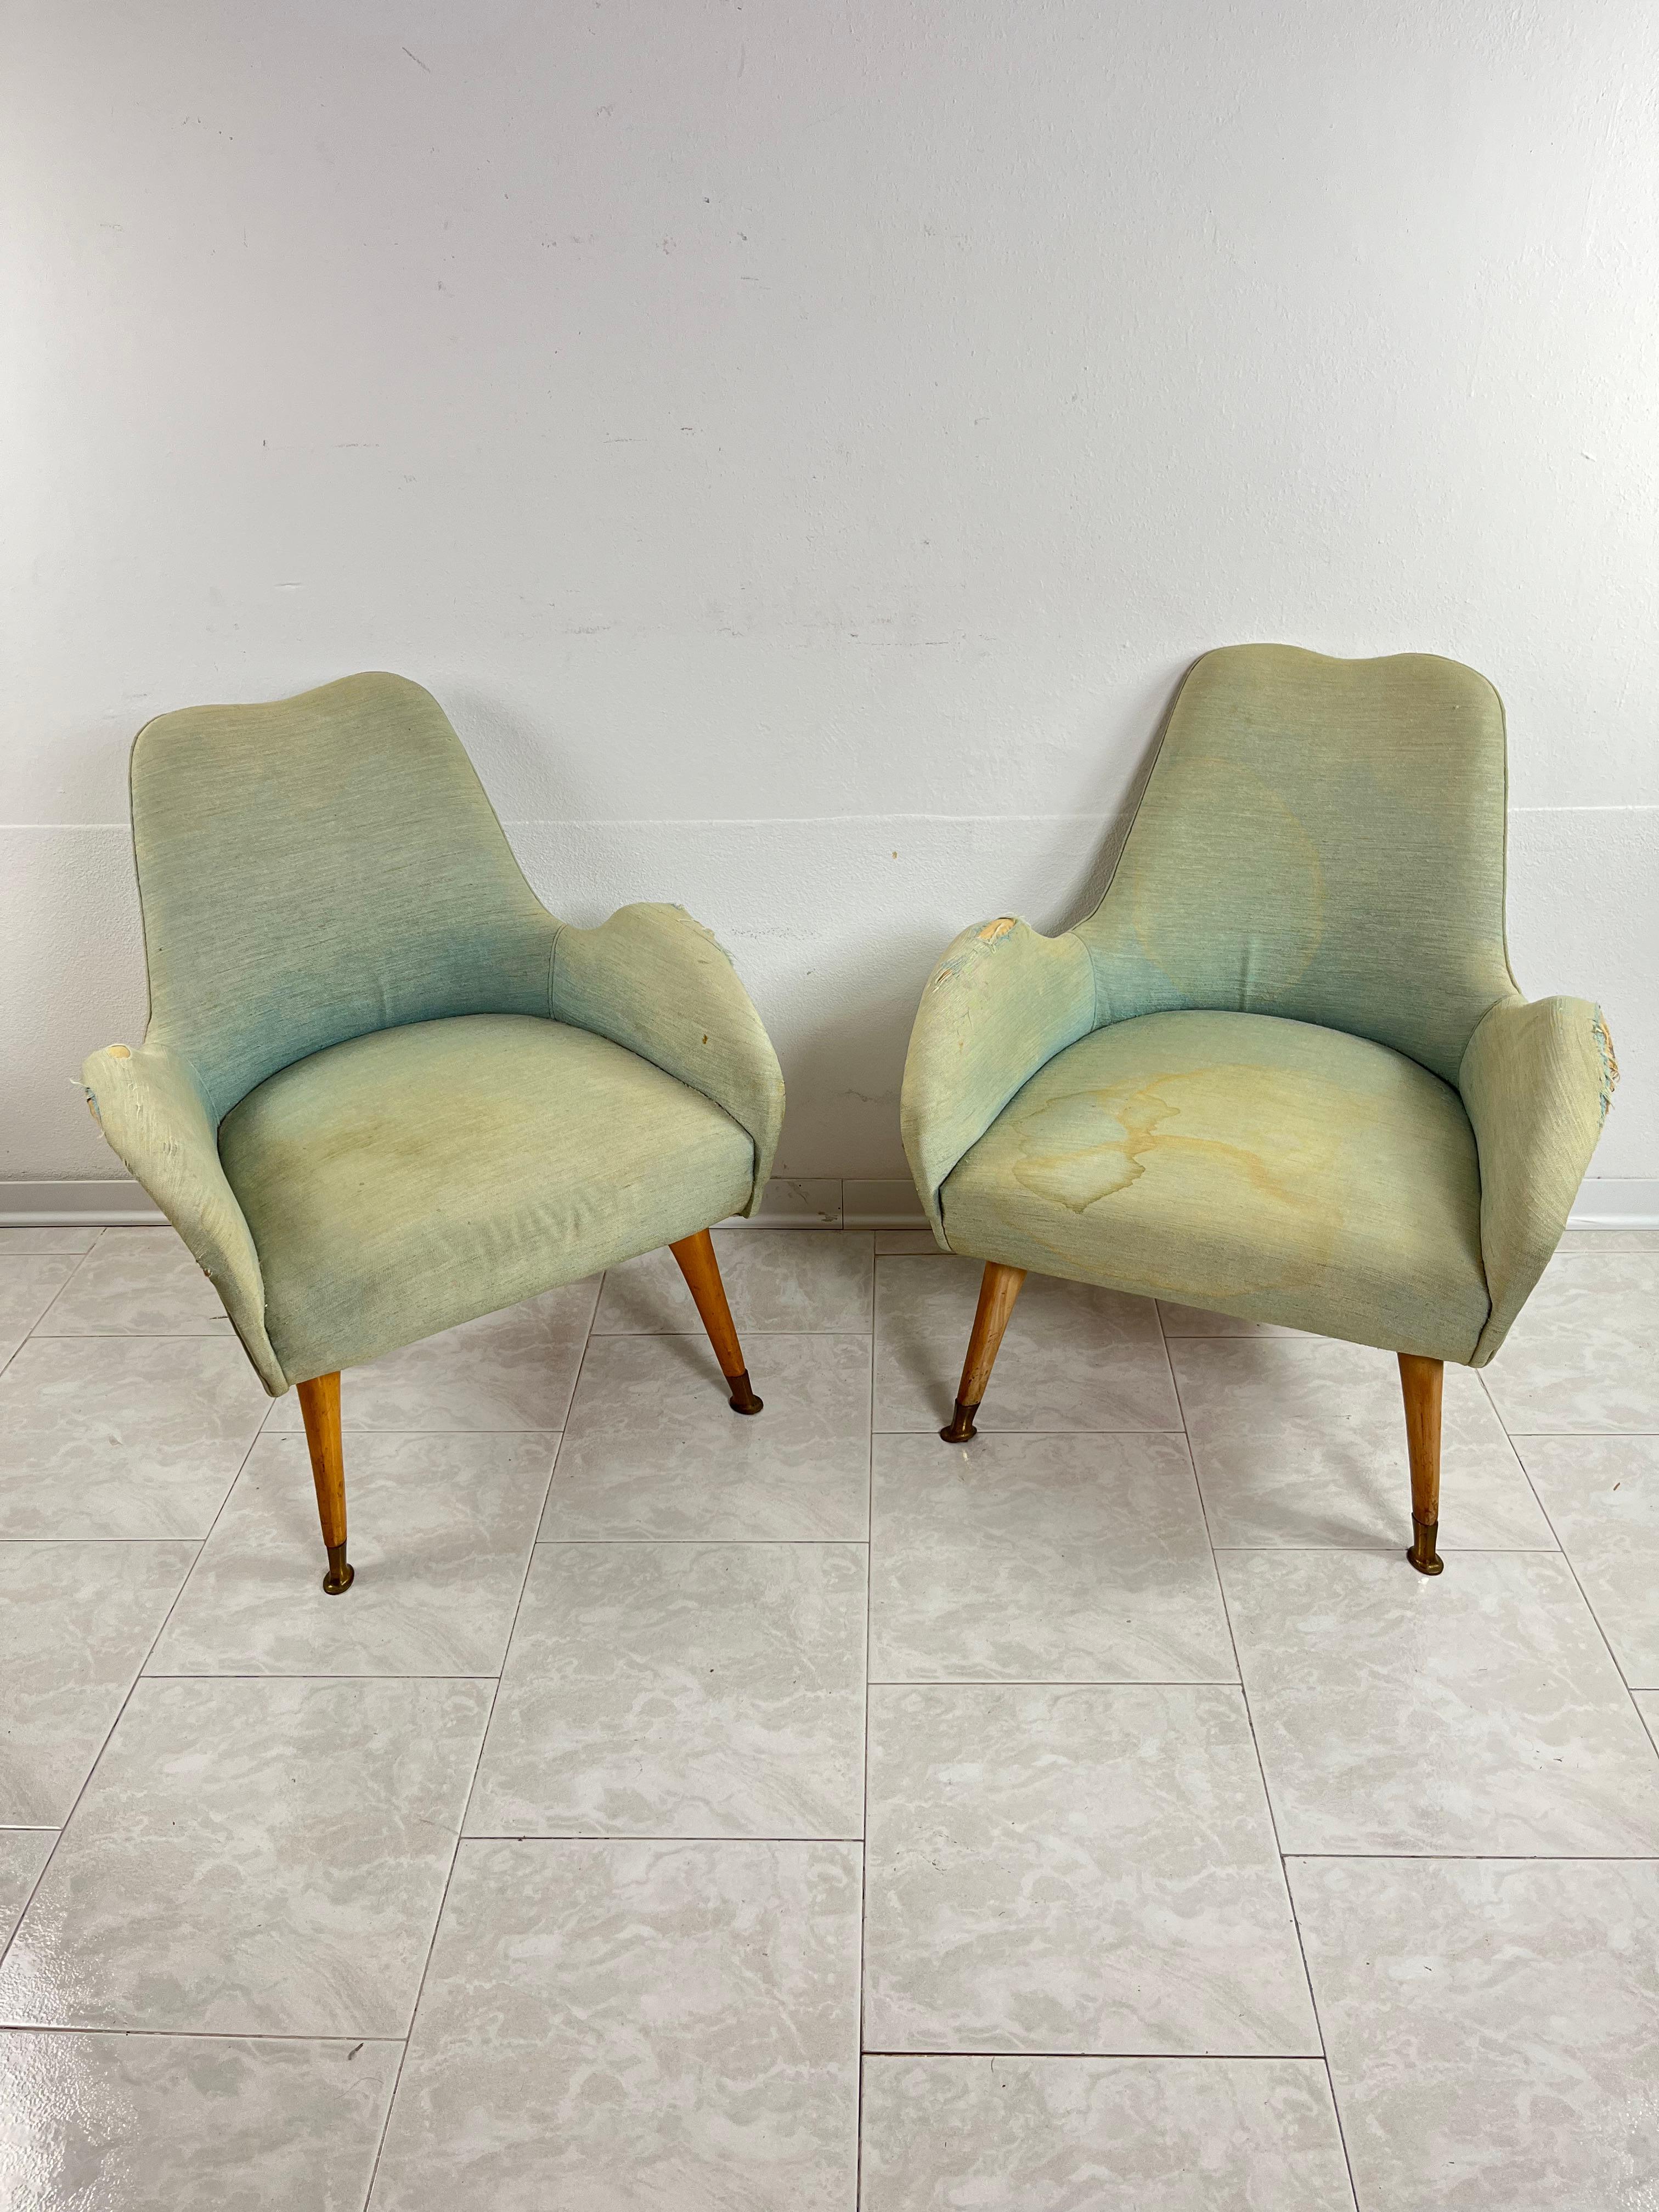 Paar Sessel aus der Mitte des Jahrhunderts, zugeschrieben Federico Munari 1950er Jahre
Die Strukturen sind stabil und in gutem Zustand. Der Bezug ist der originale, es wäre ratsam, sie neu zu polstern.
Details aus Messing.